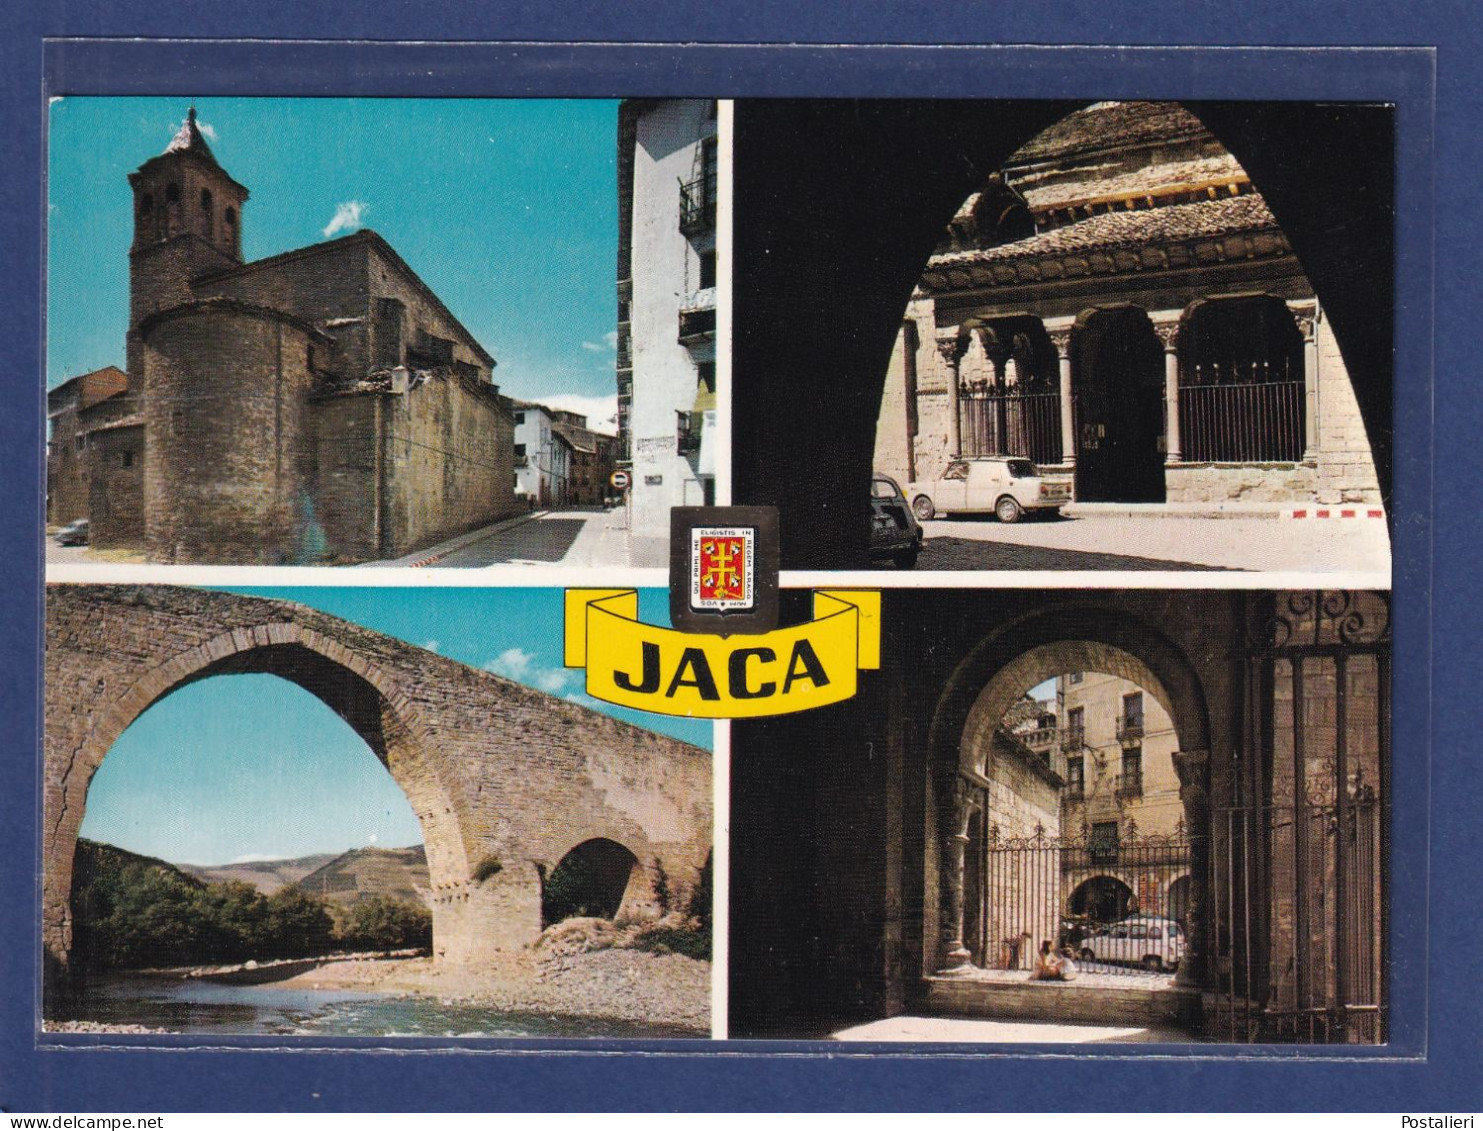 ESPAGNE - JACA (Huesca) N.º 4826 - PIRINEO ARAGONES - Perla Del Prineo. Monasterio Benedictino, Catedral, Puente - Huesca